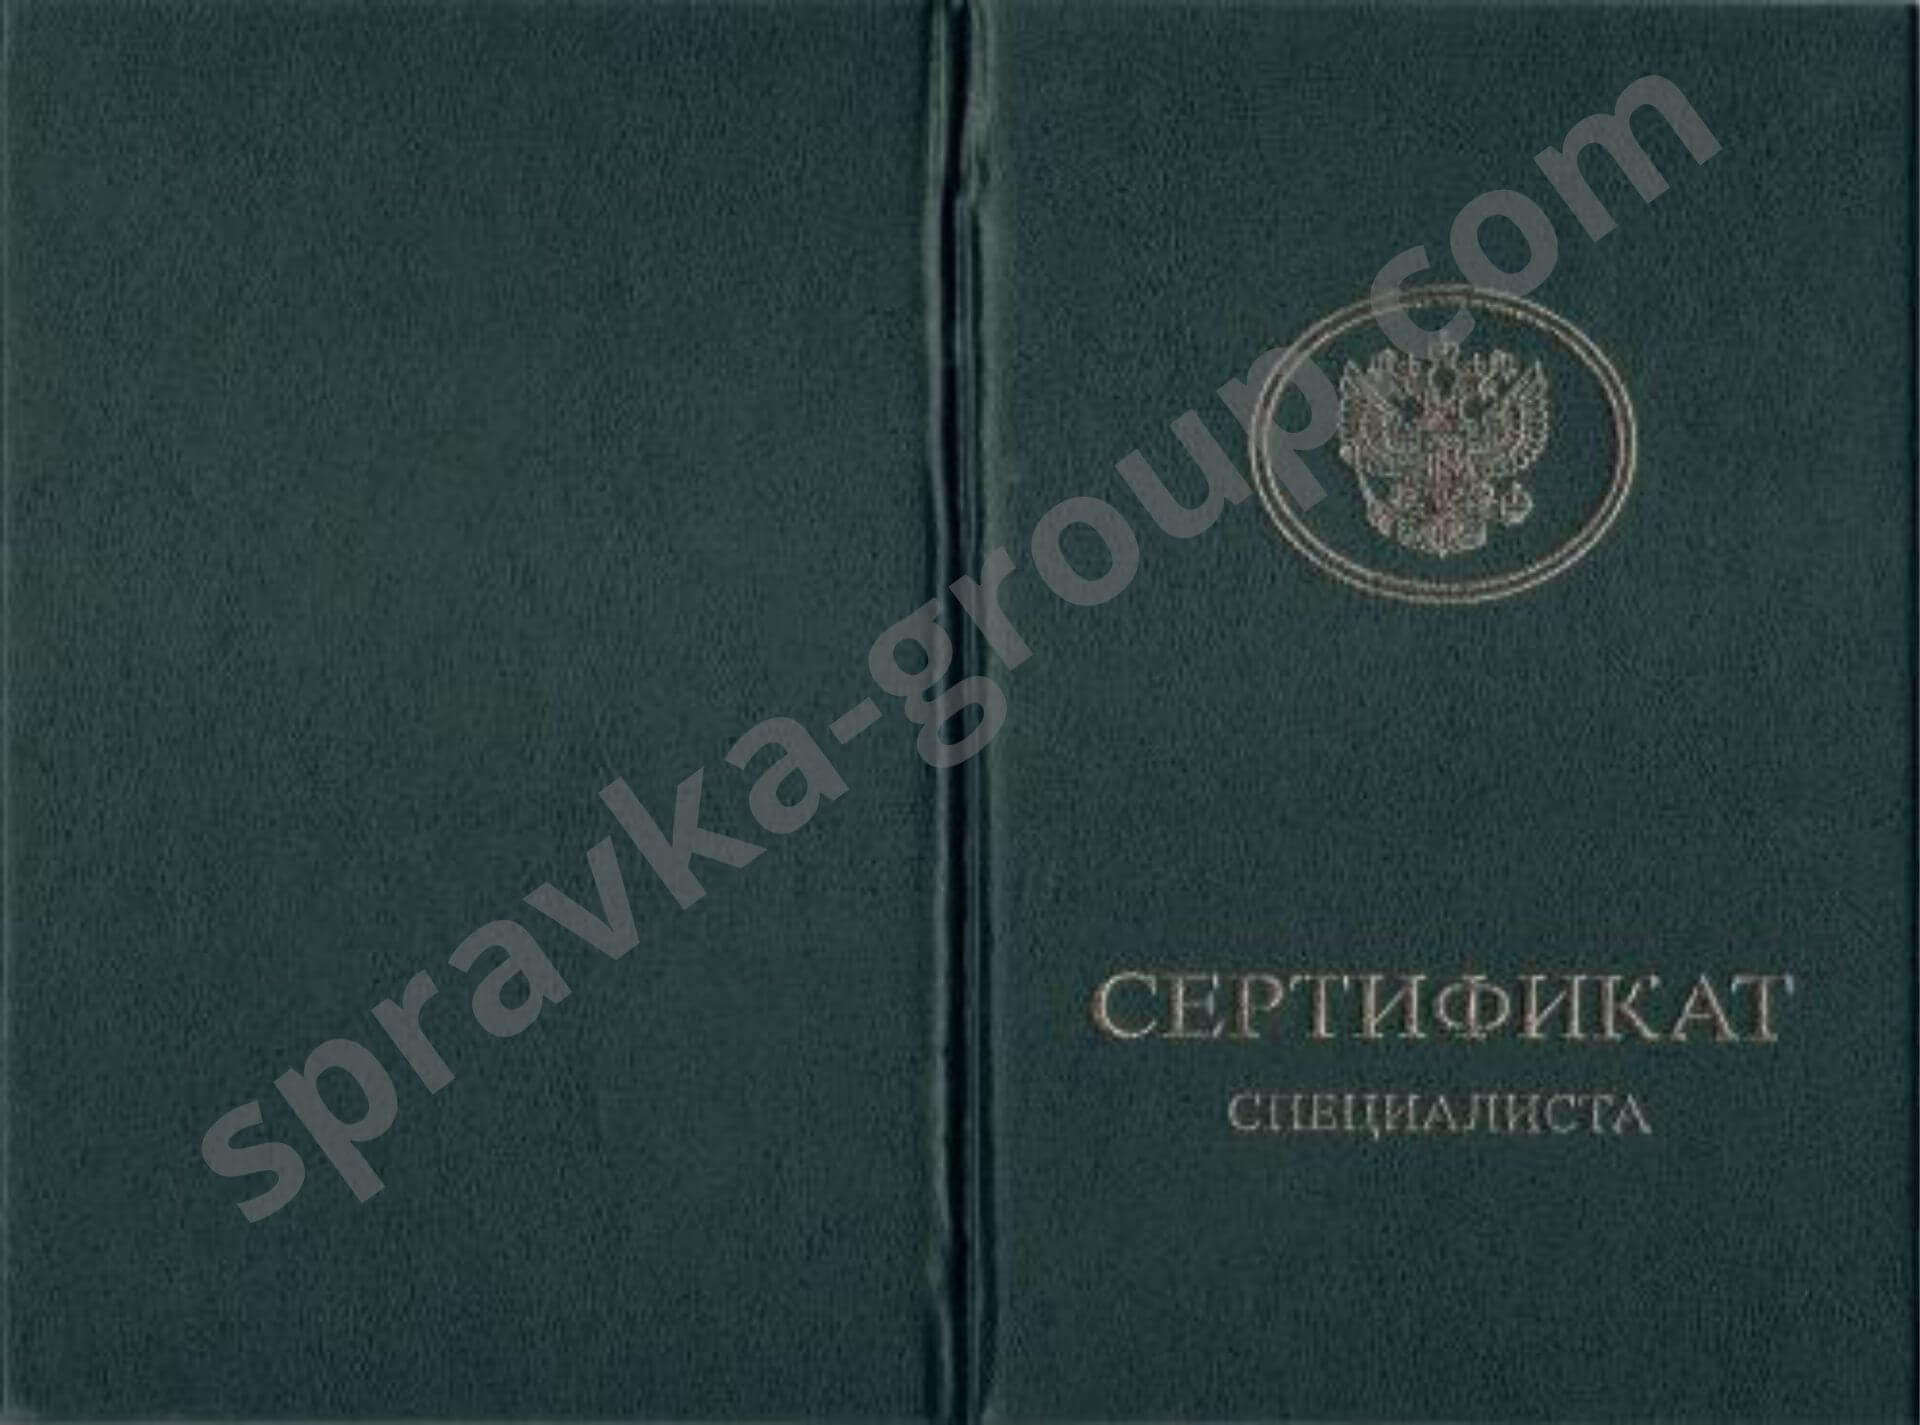 Купить сертификат Сестринское дело в Москве , фото №3